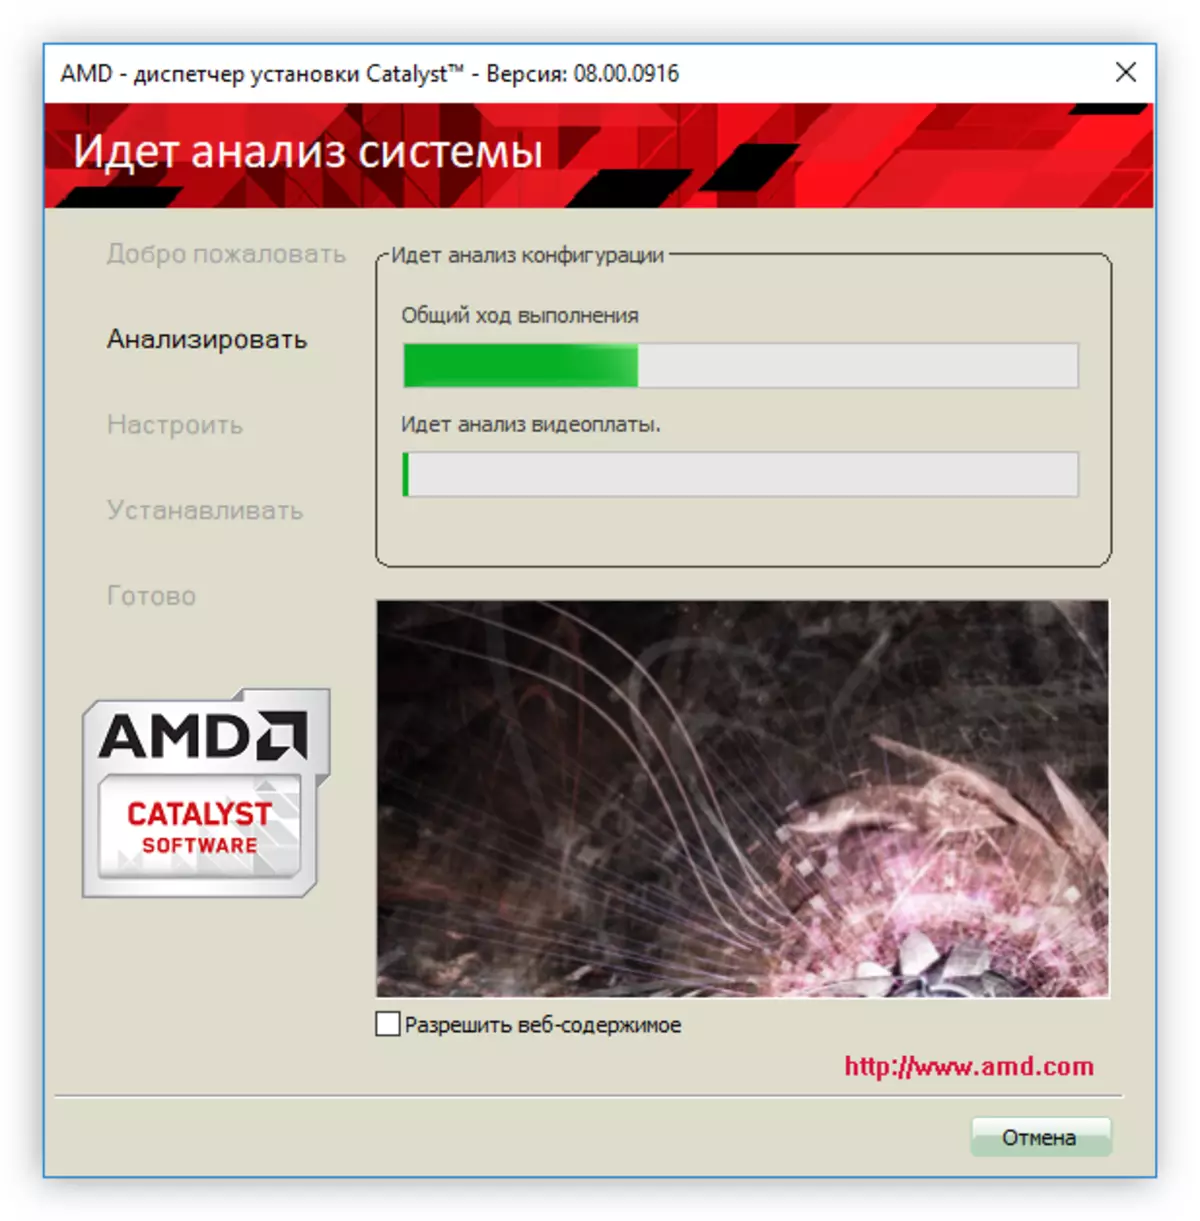 Phân tích của hệ thống khi cài đặt trình điều khiển cho AMD Radeon HD 7640G